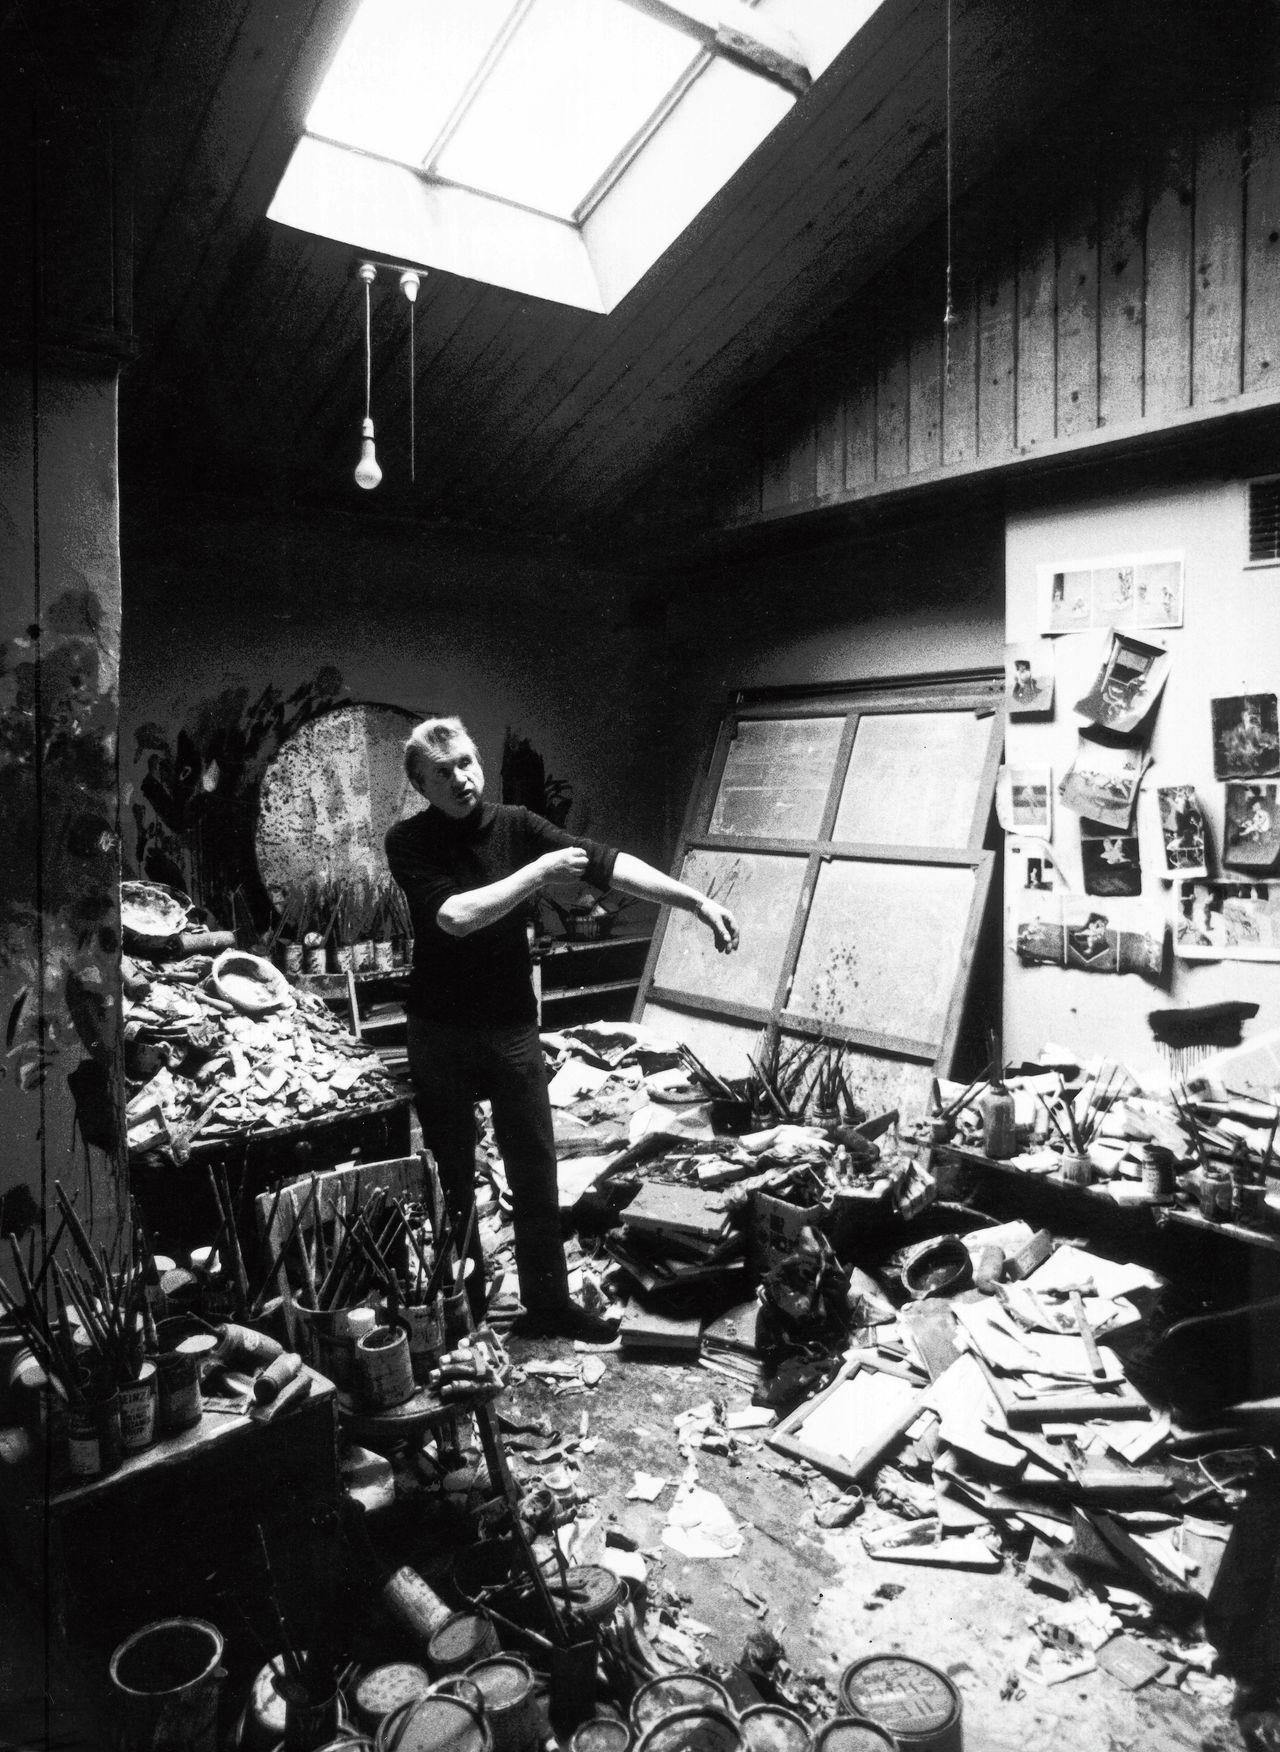 De mythes achter schilder Francis Bacon 